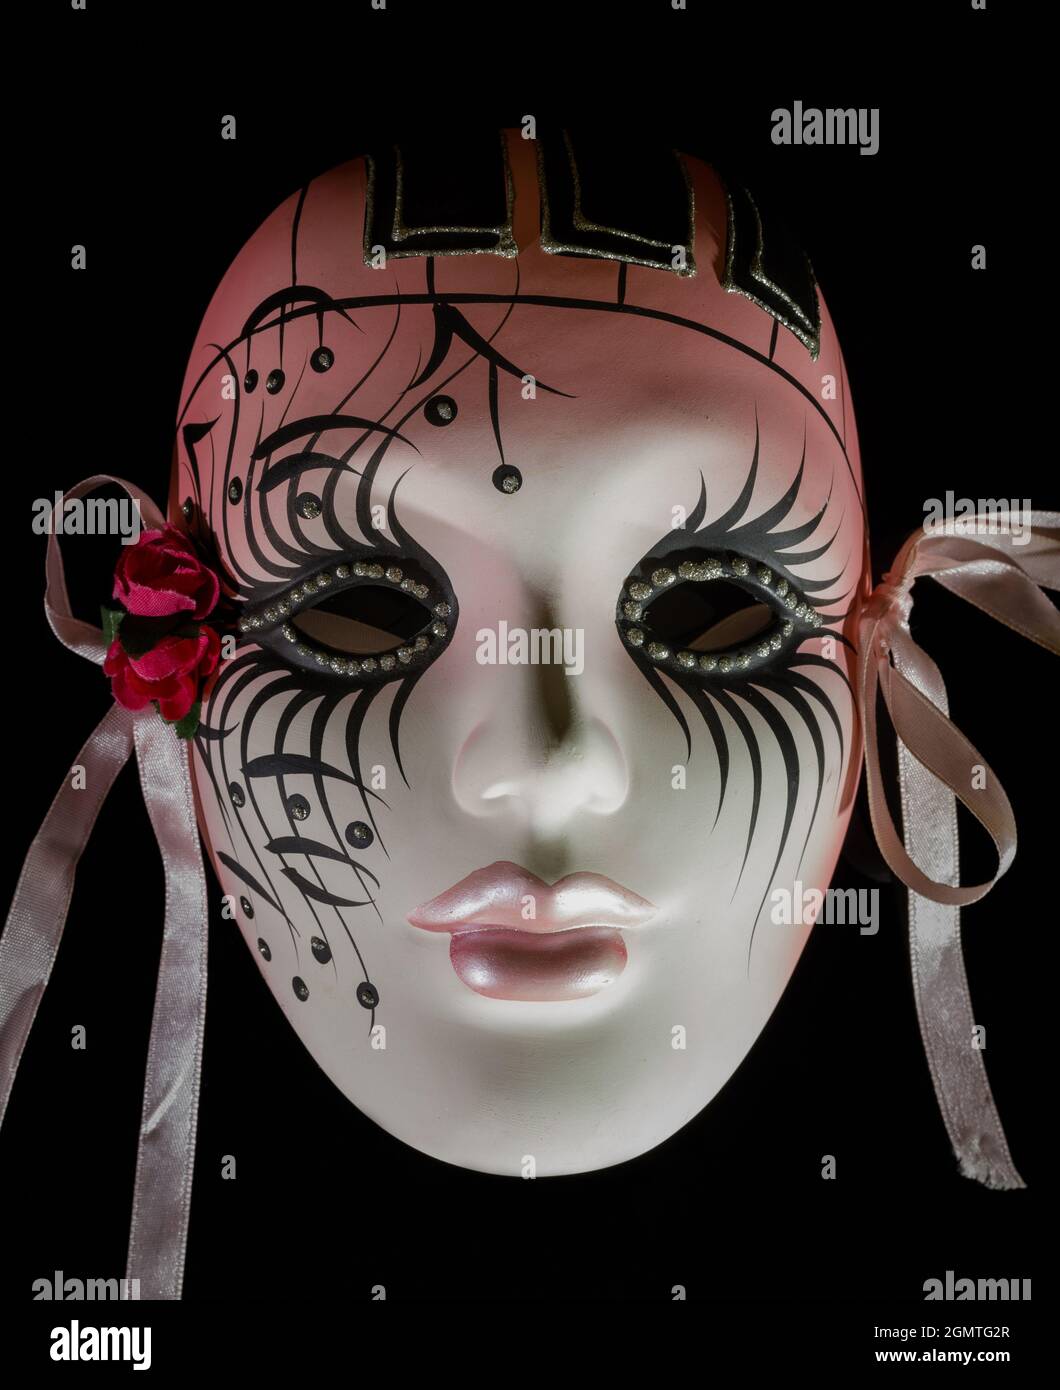 Masque Mardi gras de femme en céramique peinte avec détail textile Banque D'Images